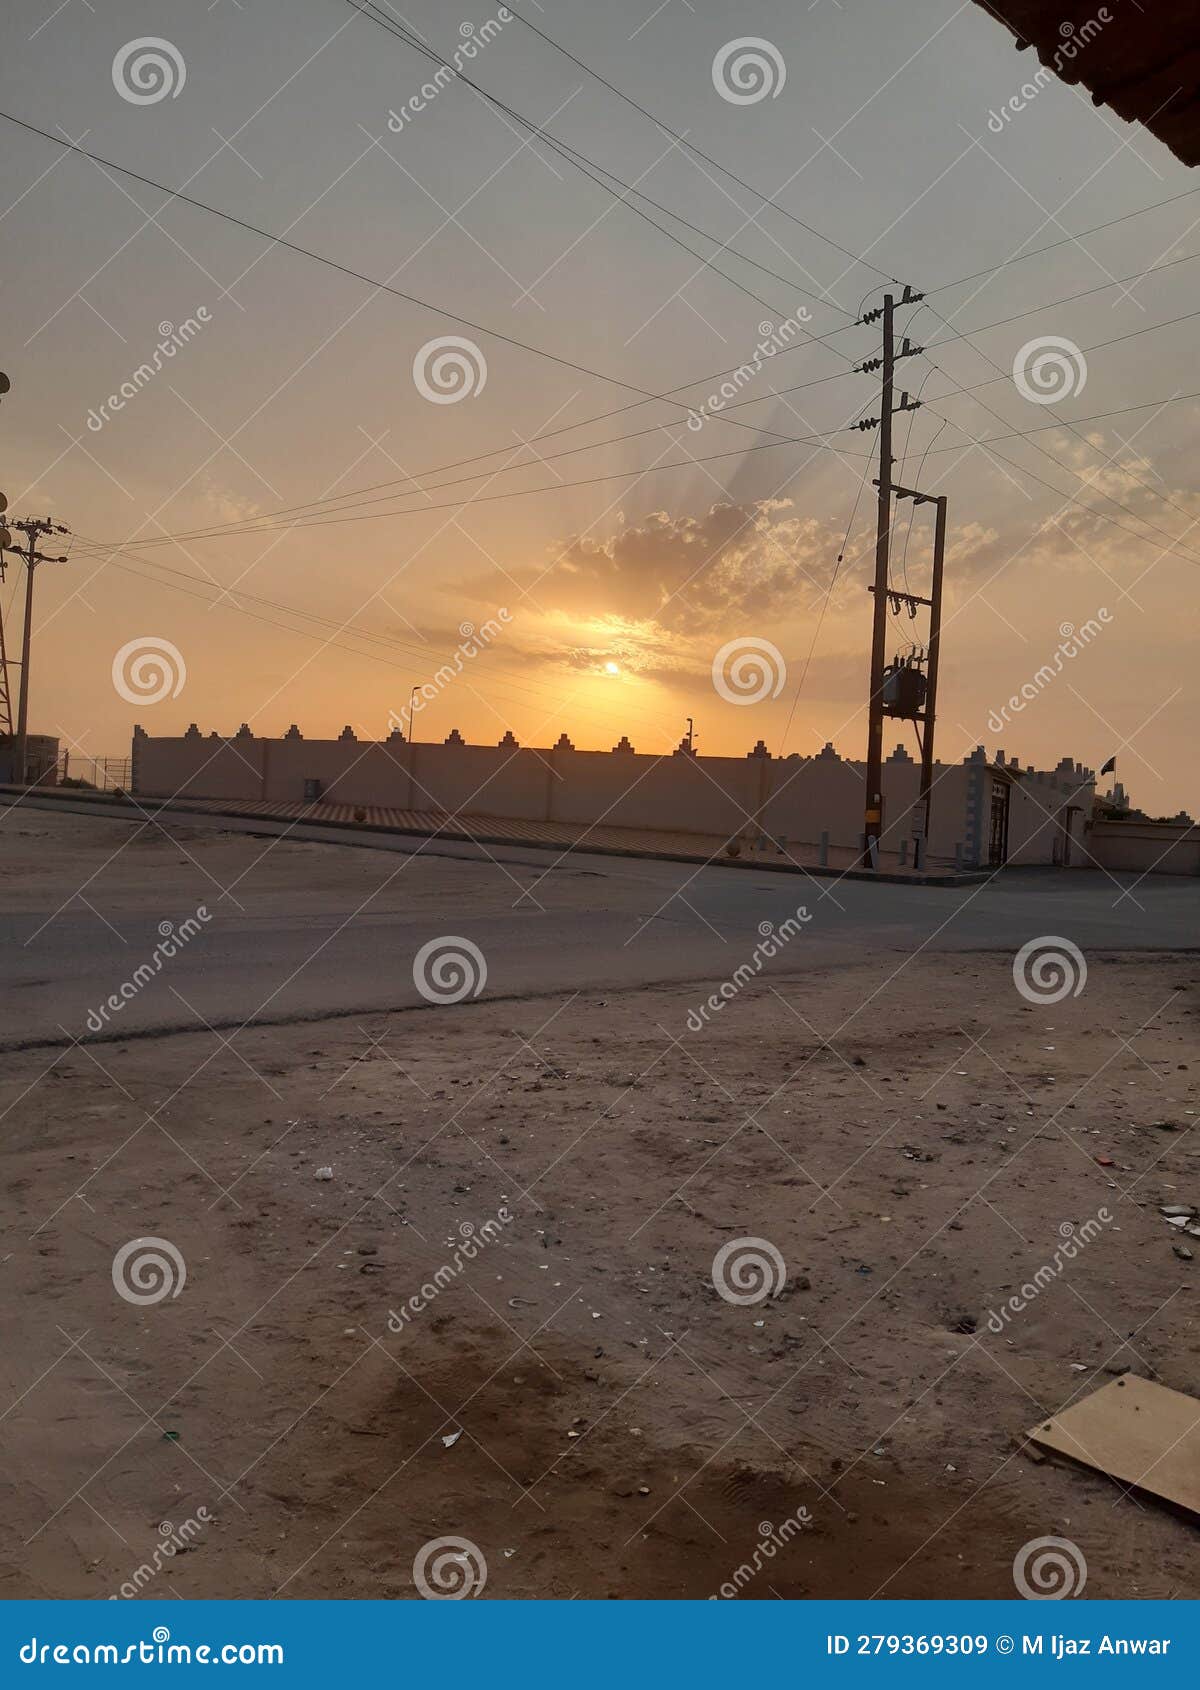 beautiful view of sun setting in dughaimia saudi arabia